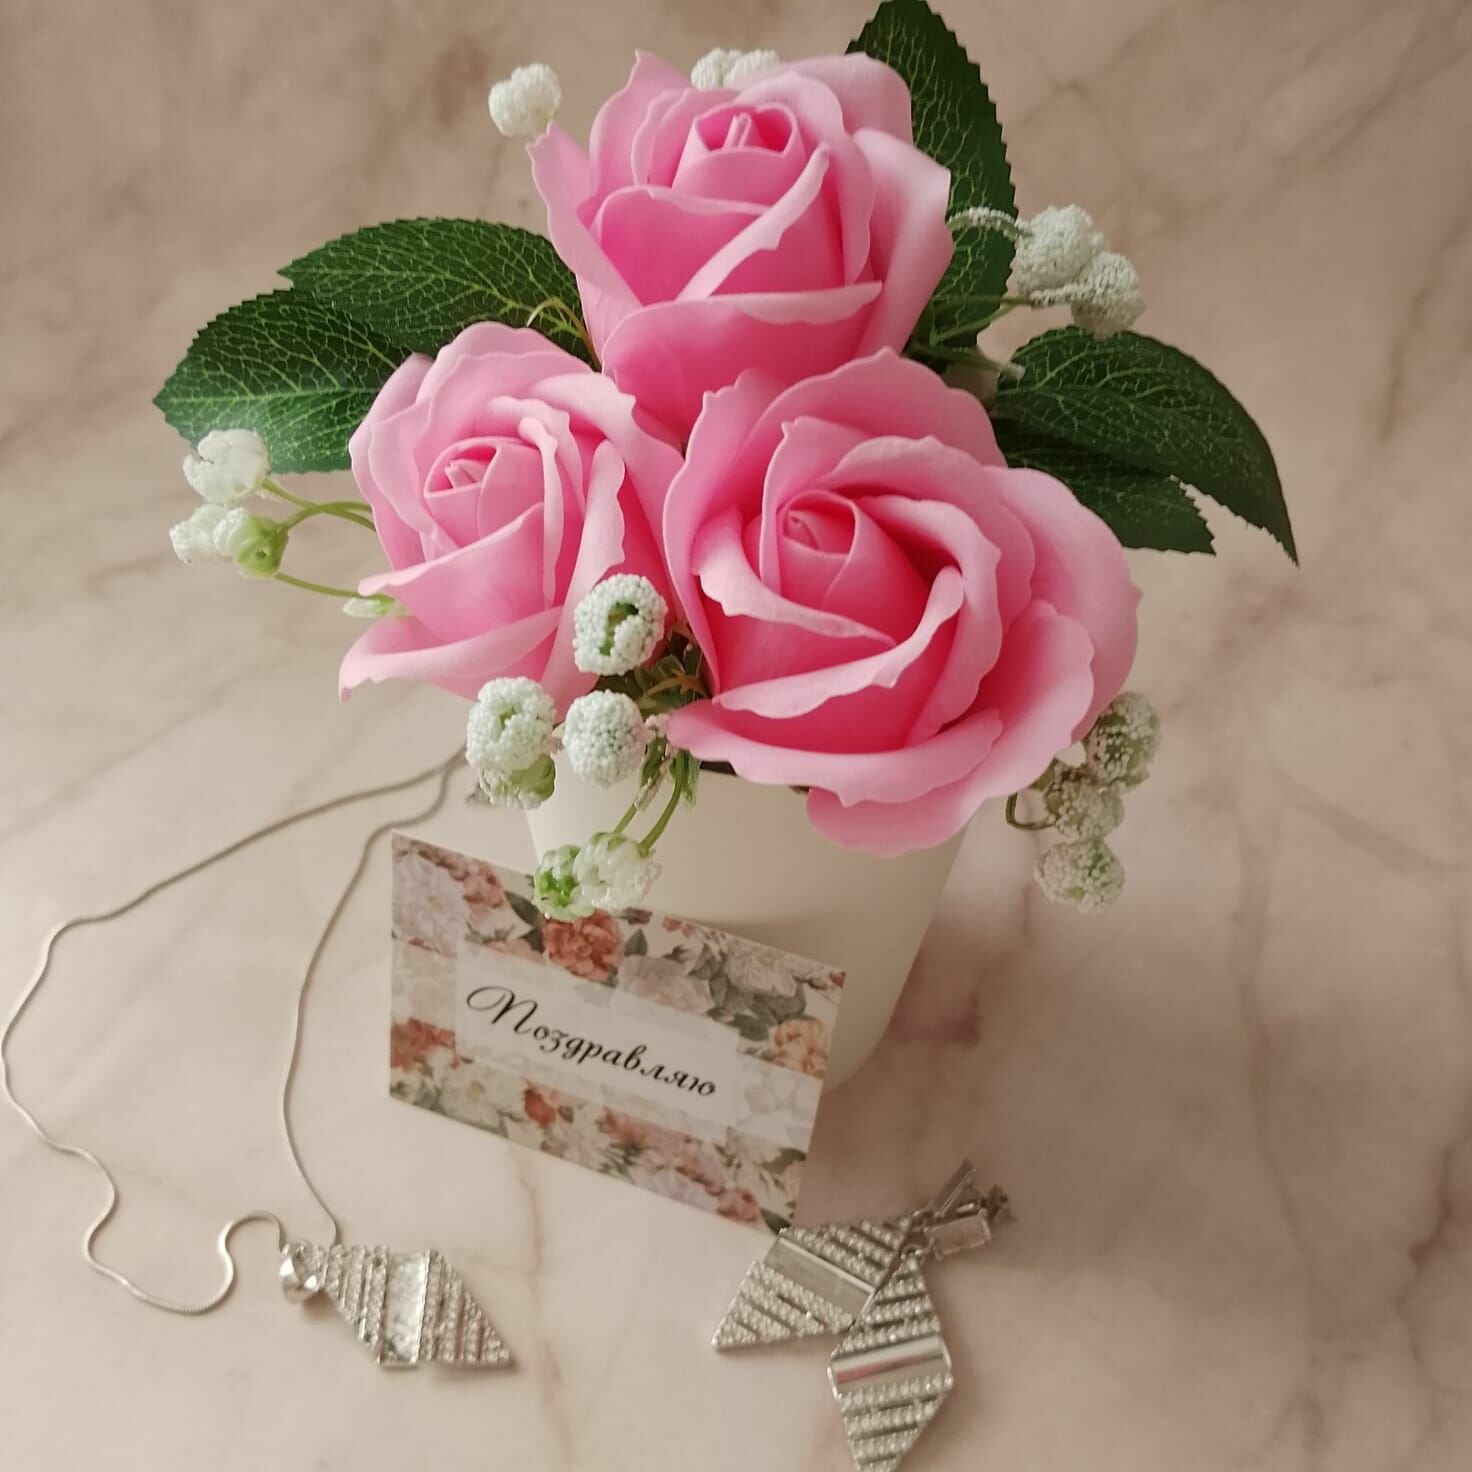 Подарочный стаканчик с мыльными розами "Поздравляю", подарок женщине, любимой